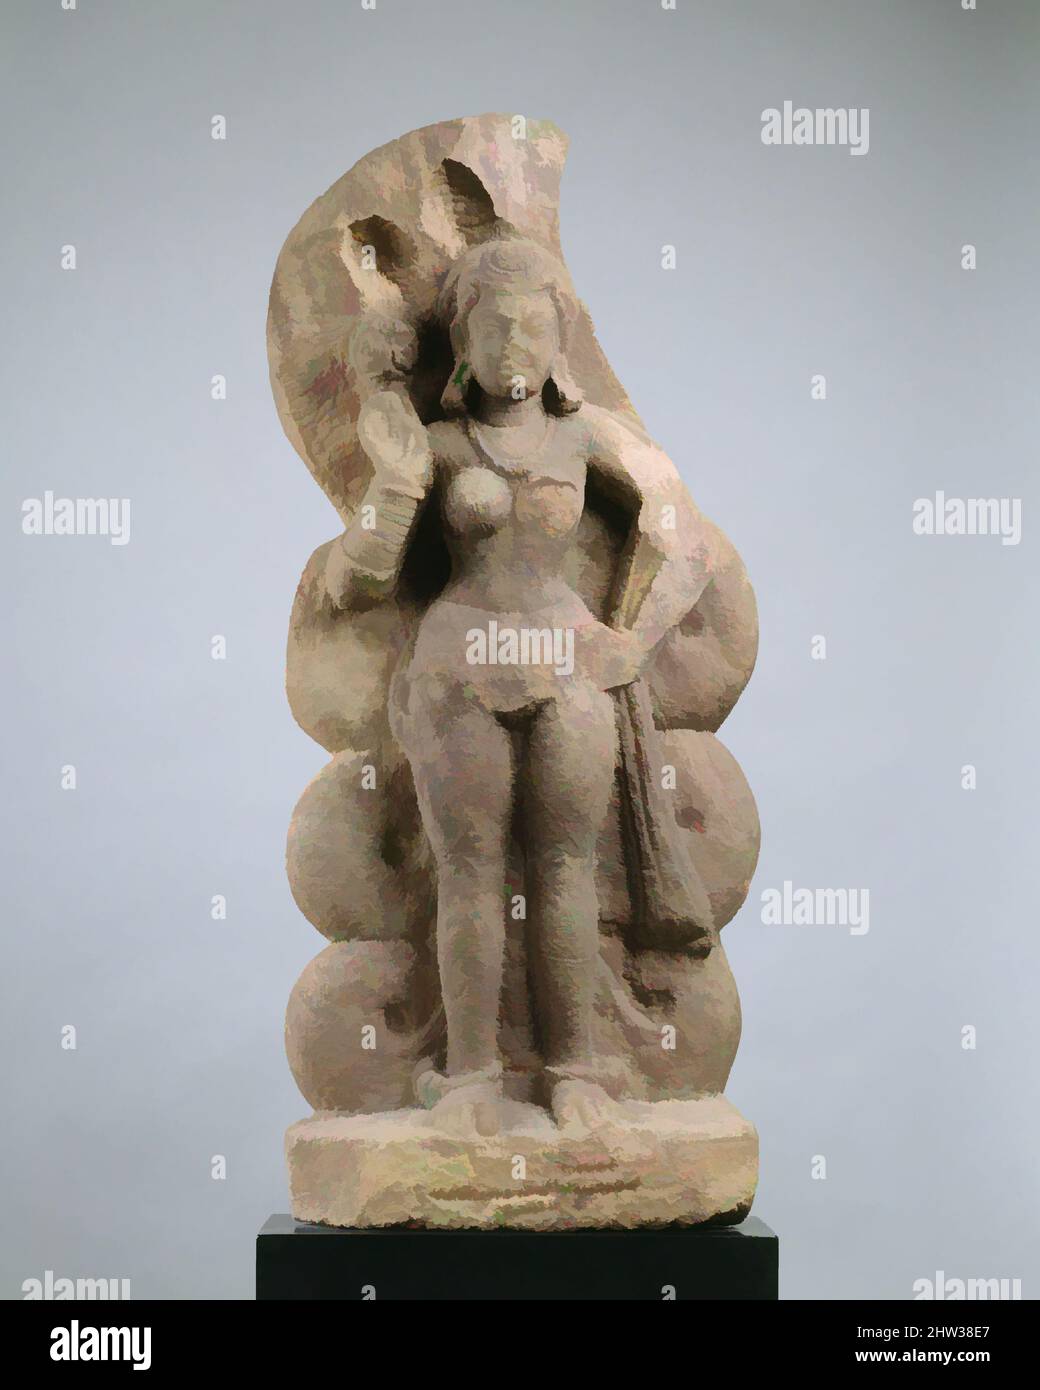 Kunst inspiriert von Nagini (Schlangenkönigin oder Gemahlin von Nagaraja), Gupta-Periode, zweites Viertel des 5.. Jahrhunderts, Indien (Madhya Pradesh), Stone, H. 34 1/2 Zoll (87,6 cm), Skulptur, auf dem indischen Subkontinent sind Tempel seit Anbeginn der klassischen Werke, die von Artotop mit einem Schuss Moderne modernisiert wurden, der Verehrung von Schlangen gewidmet. Formen, Farbe und Wert, auffällige visuelle Wirkung auf Kunst. Emotionen durch Freiheit von Kunstwerken auf zeitgemäße Weise. Eine zeitlose Botschaft, die eine wild kreative neue Richtung verfolgt. Künstler, die sich dem digitalen Medium zuwenden und die Artotop NFT erschaffen Stockfoto